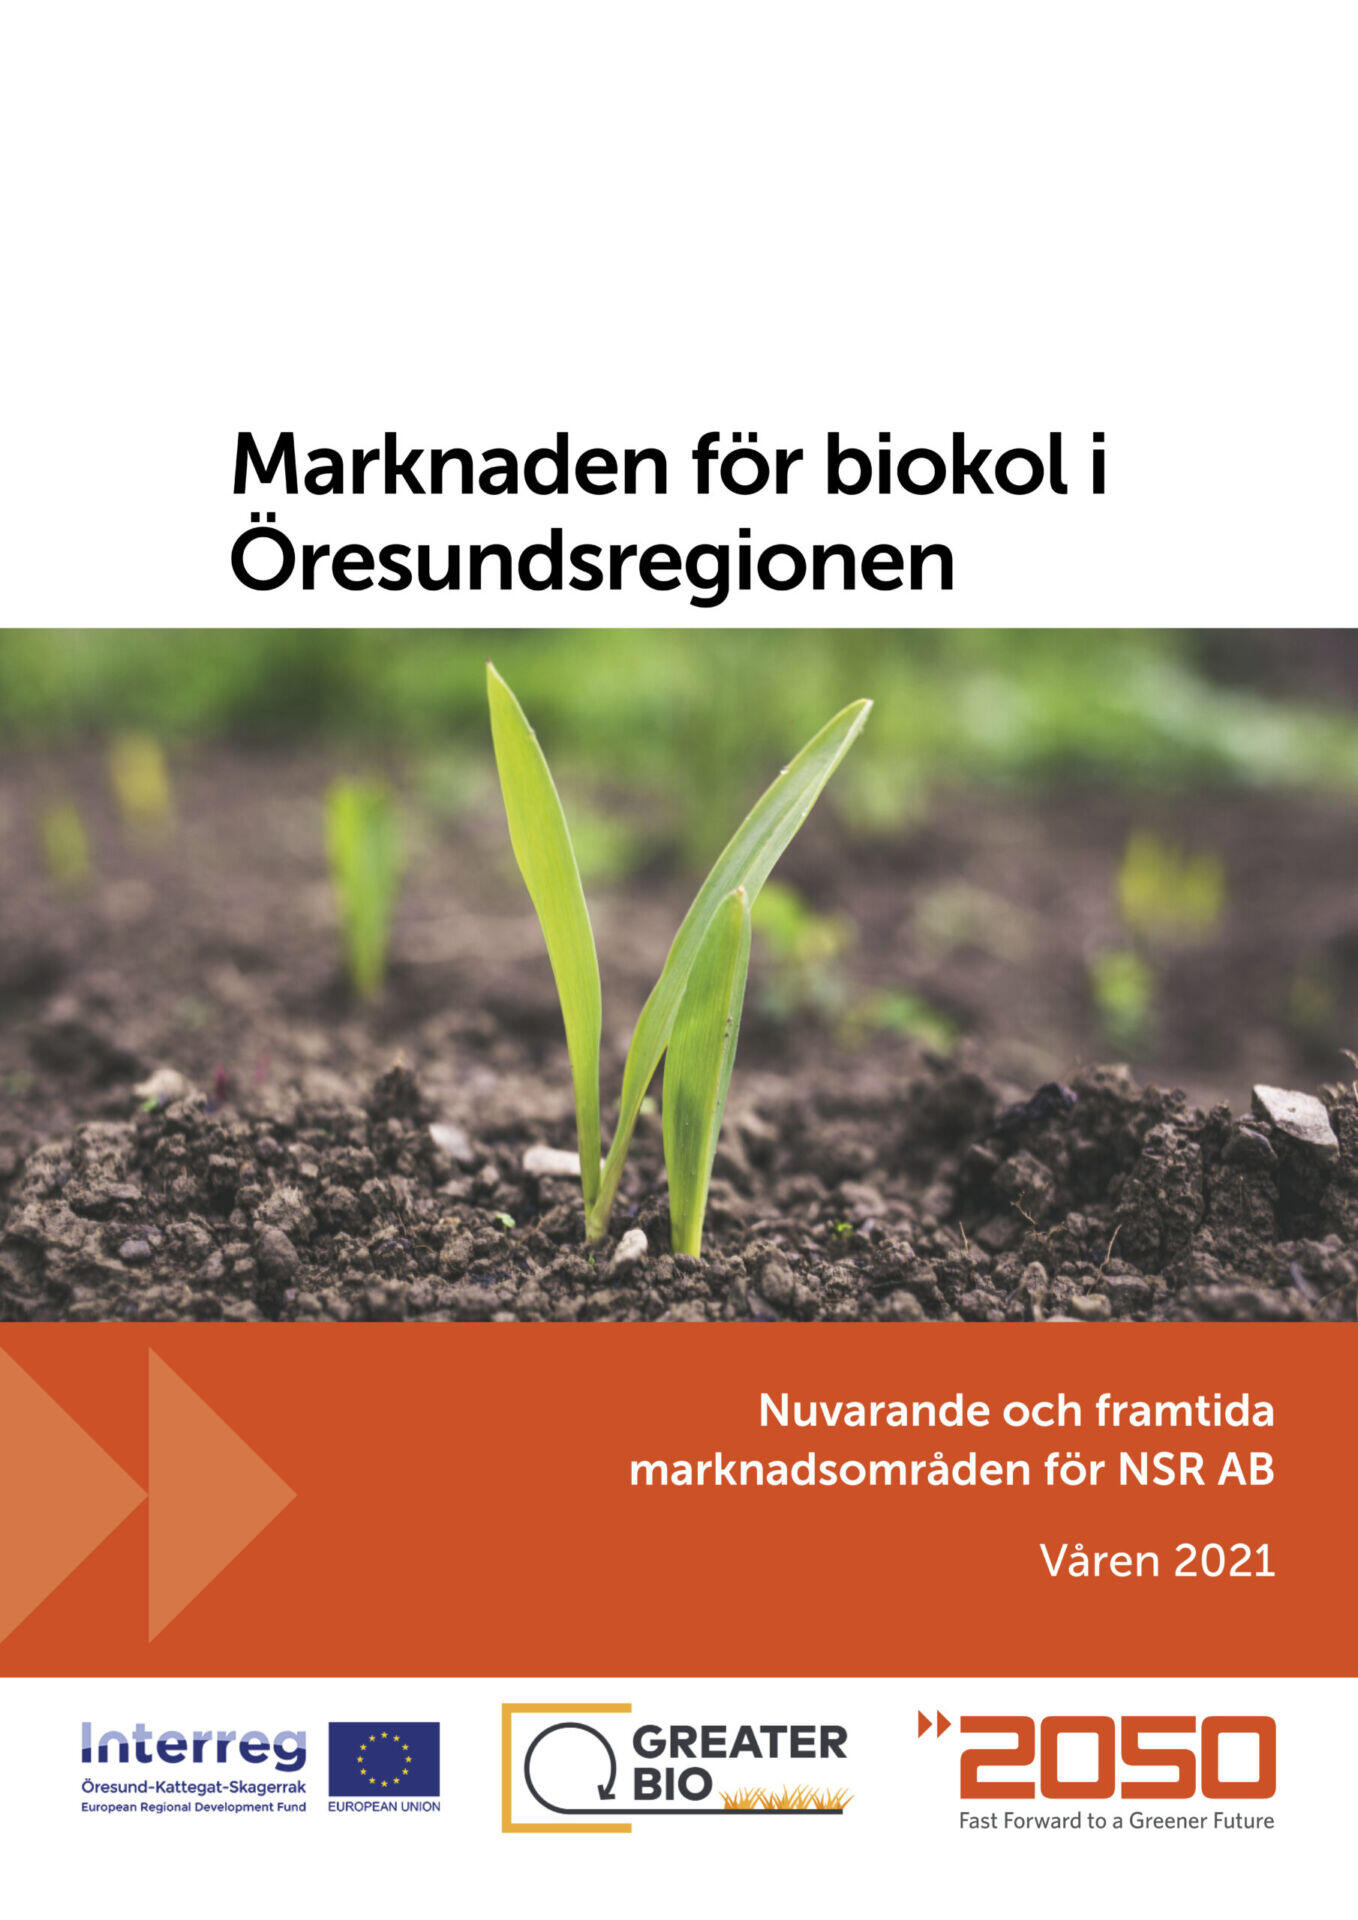 Marknaden för biokol i Öresundsregionen